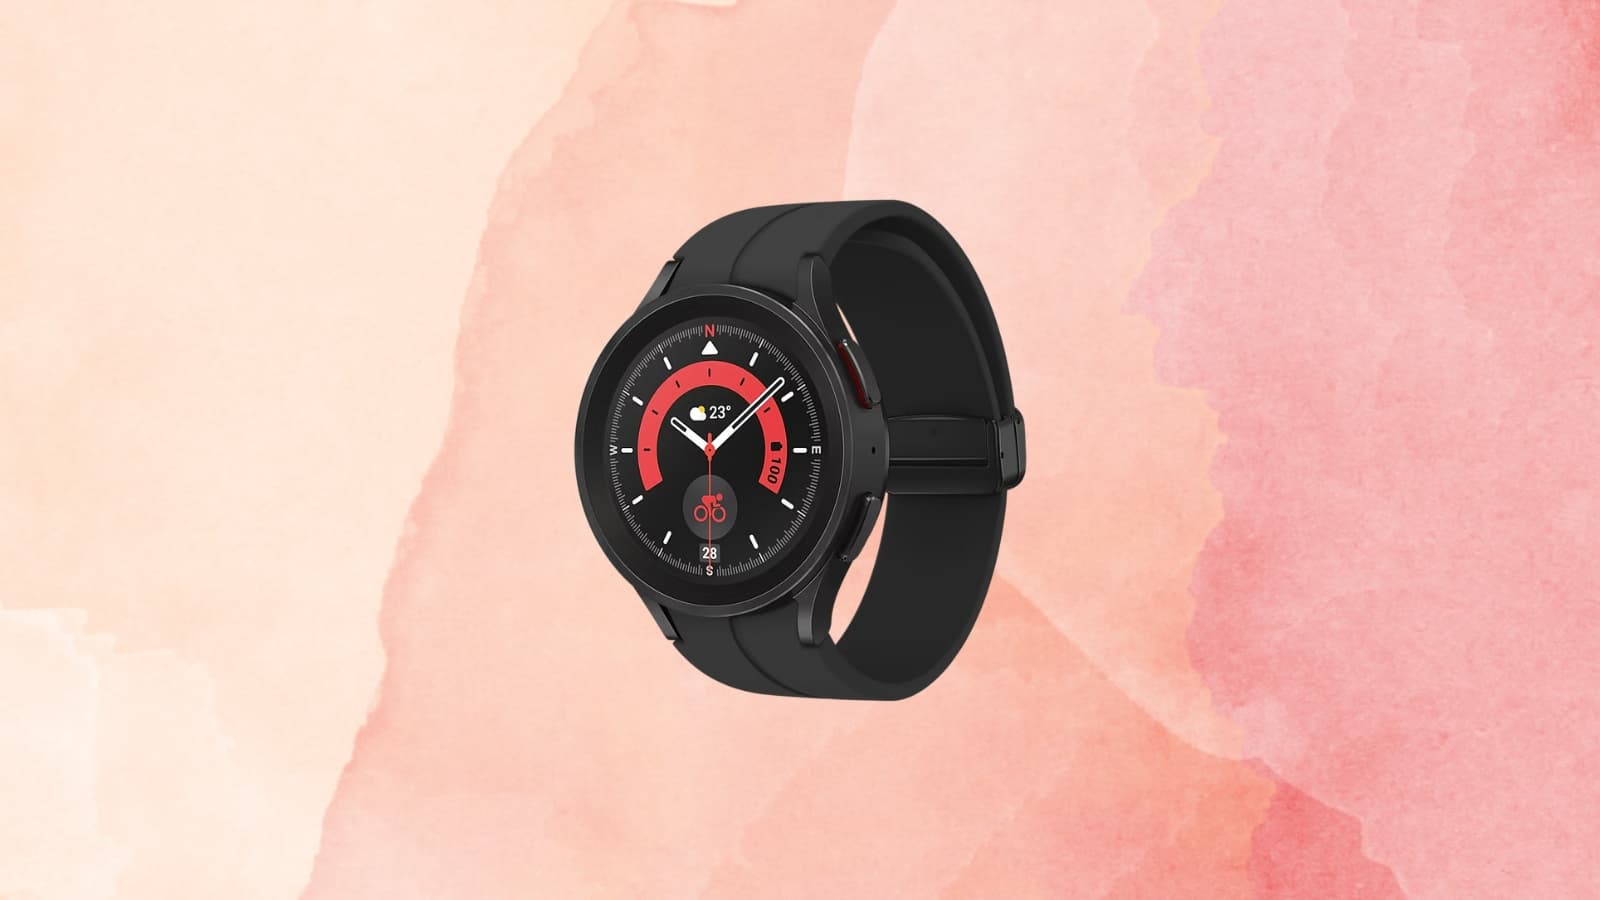 Montre Connectée sport Smart Watch 2019 pas cher bluetooth homme et femme |  Dark Label Shop